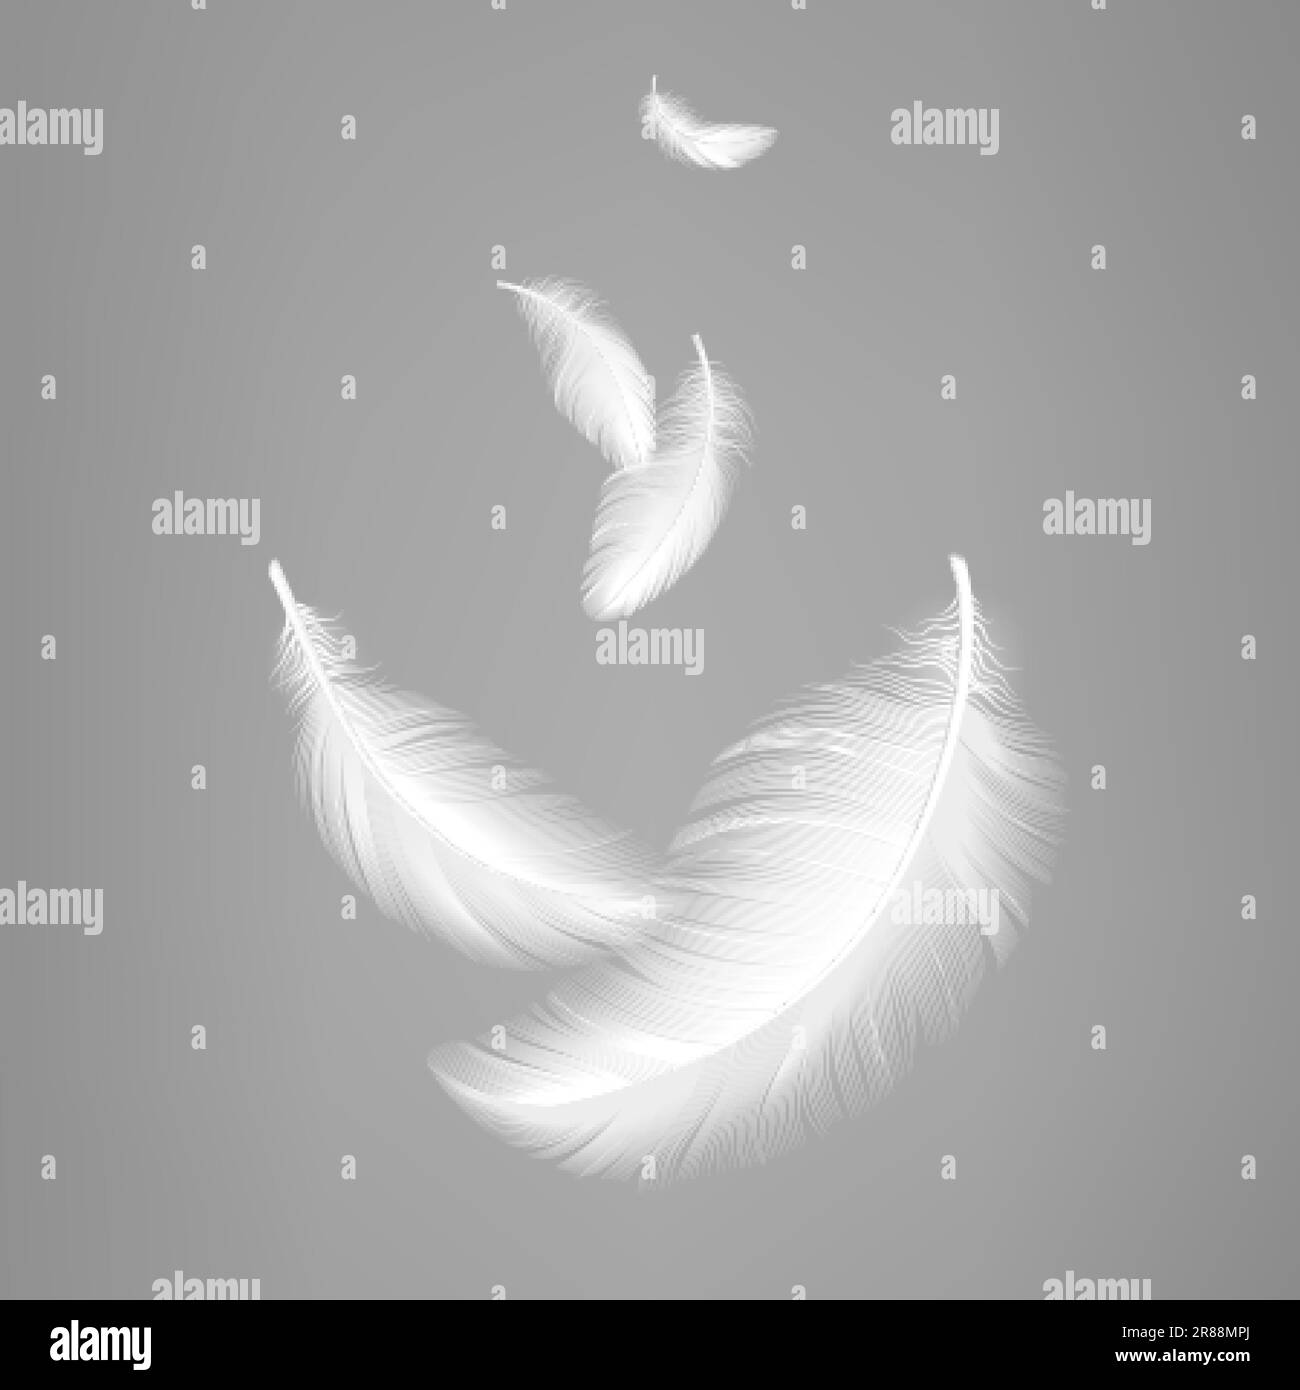 Piume realistiche volanti bianche. Composizione delle piume d'uccello, effetto leggerezza dei cuscini o dell'aria. Elementi grafici decorativi vettoriali Illustrazione Vettoriale